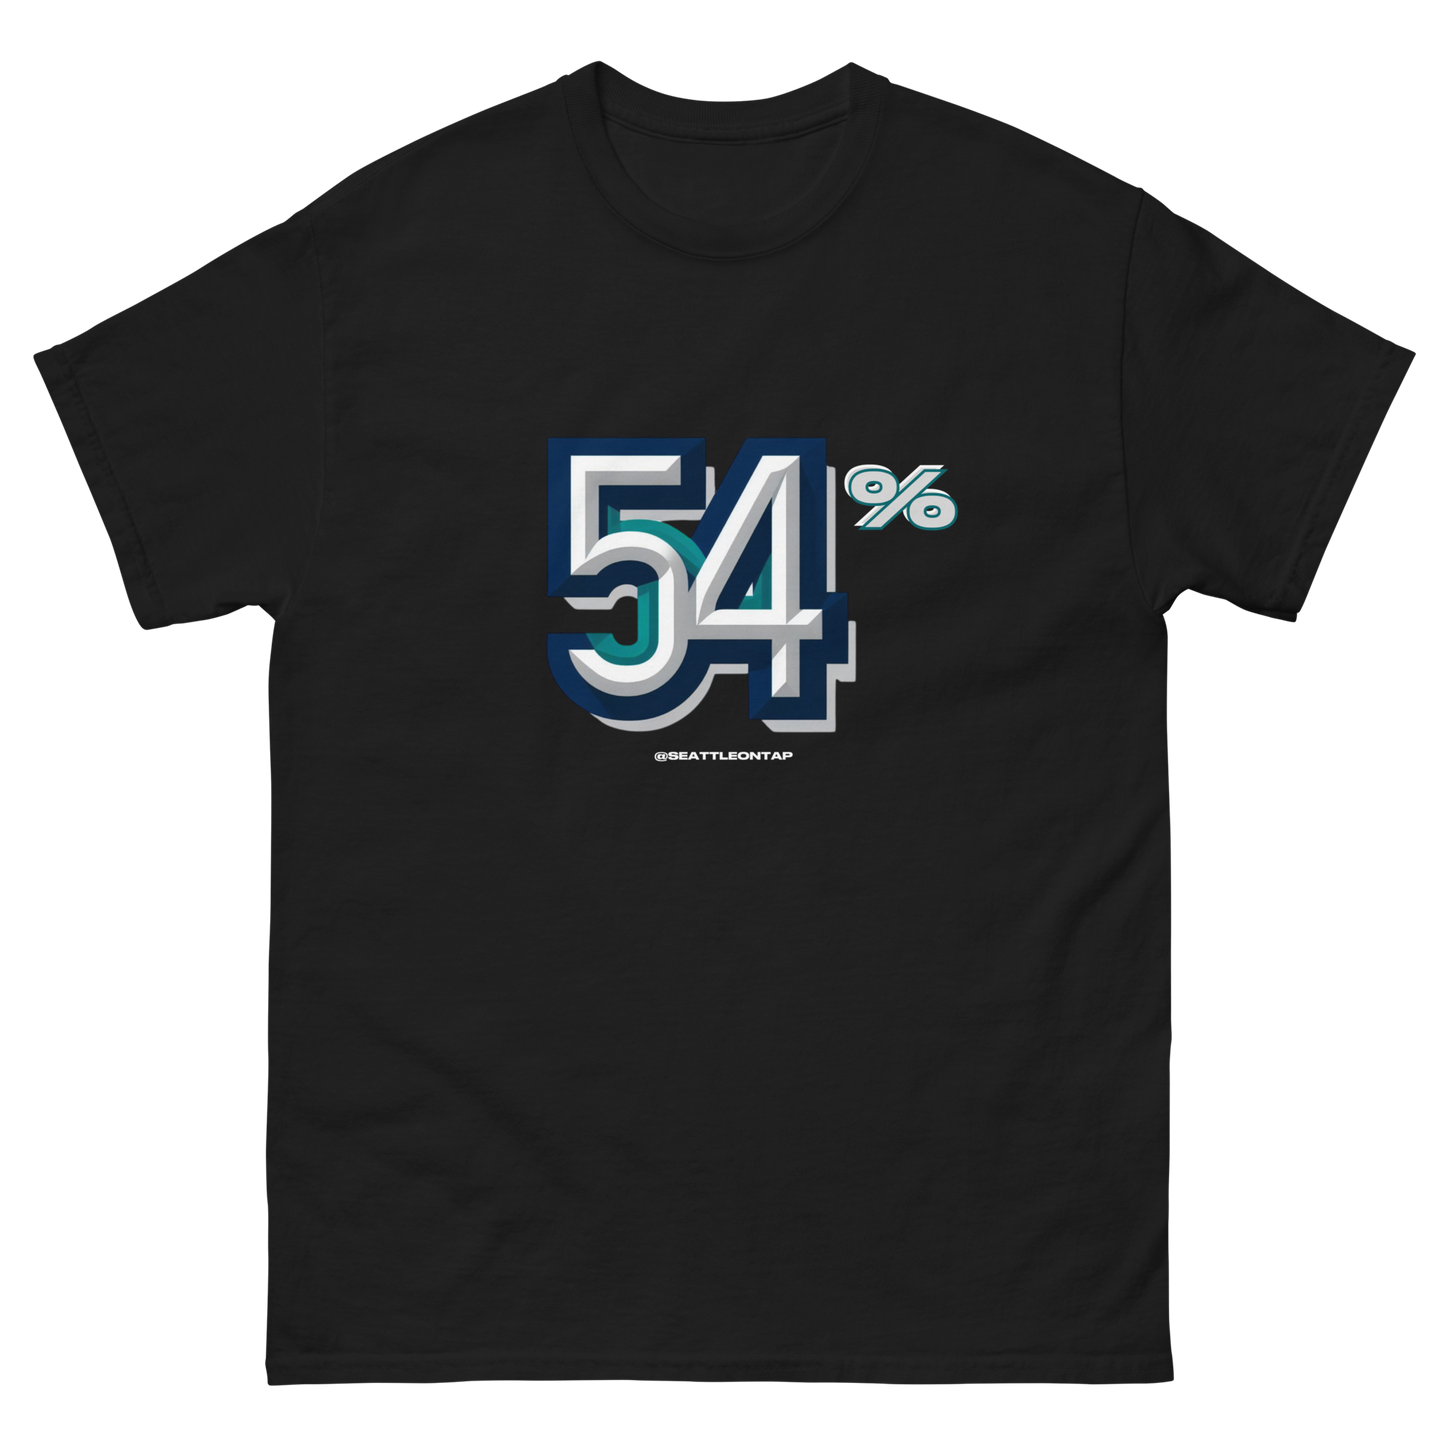 Seattle Baseball 54% Shirt